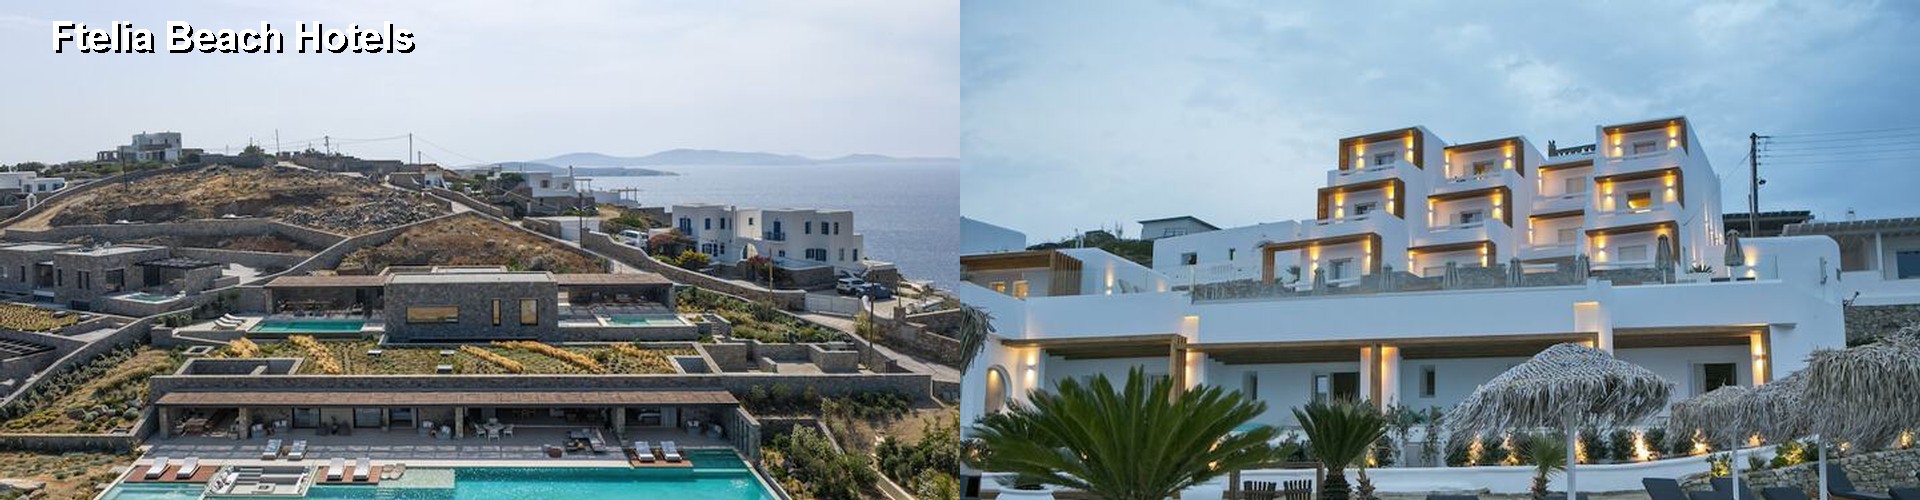 5 Best Hotels near Ftelia Beach